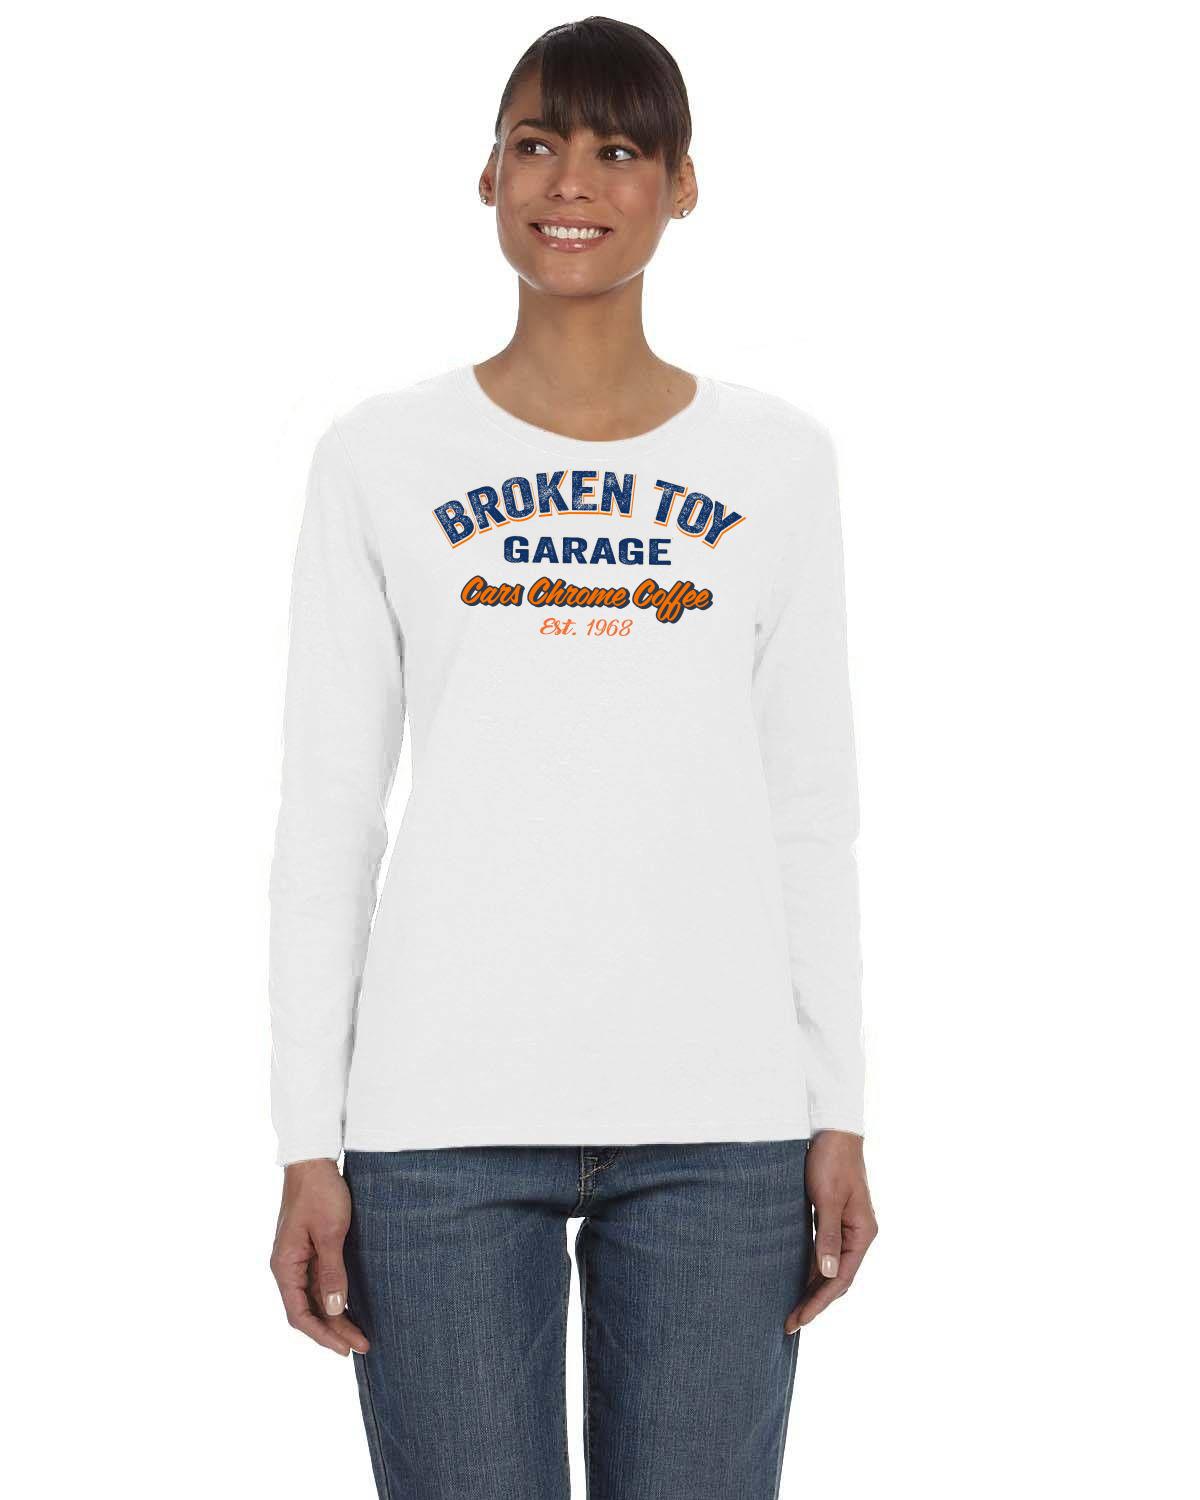 Broken Toy Garage Ladies' Long-Sleeve T-Shirt